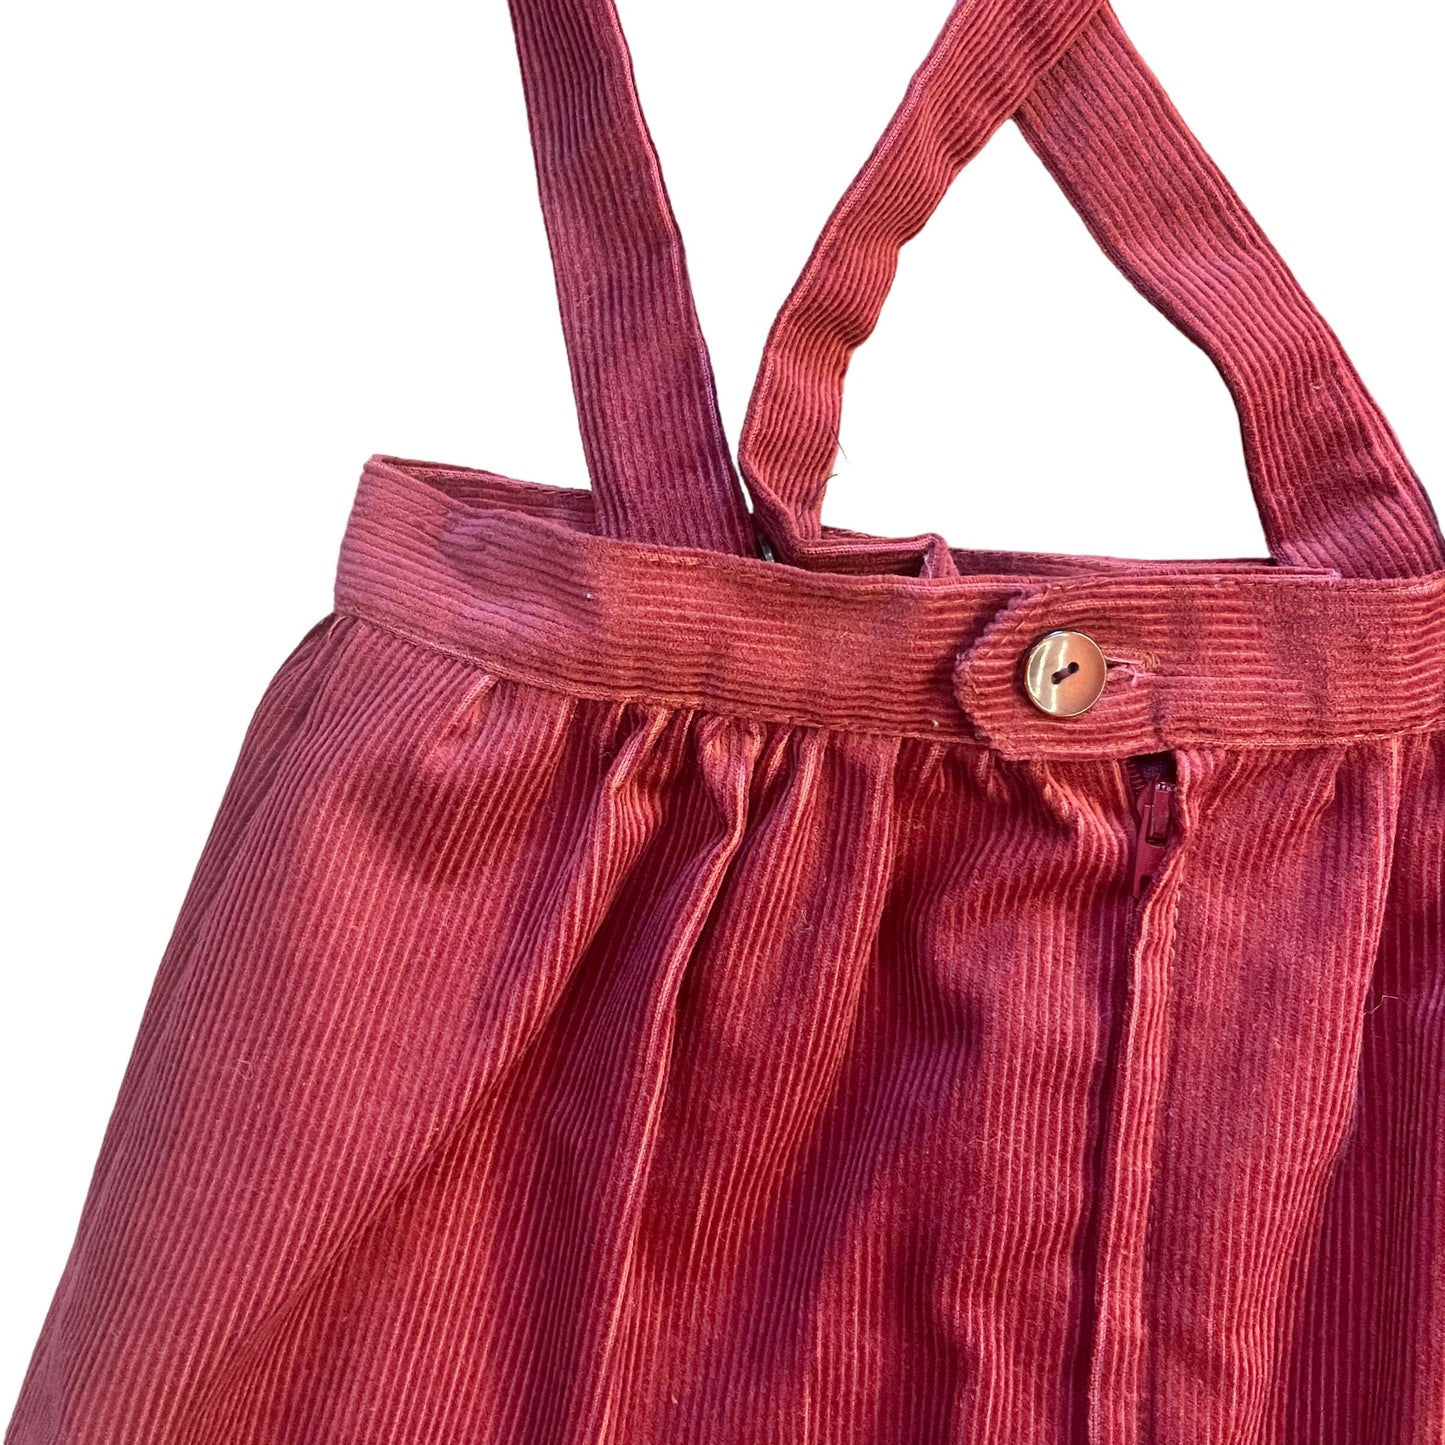 1970s Dark Red Corduroy Skirt / 5-6Y